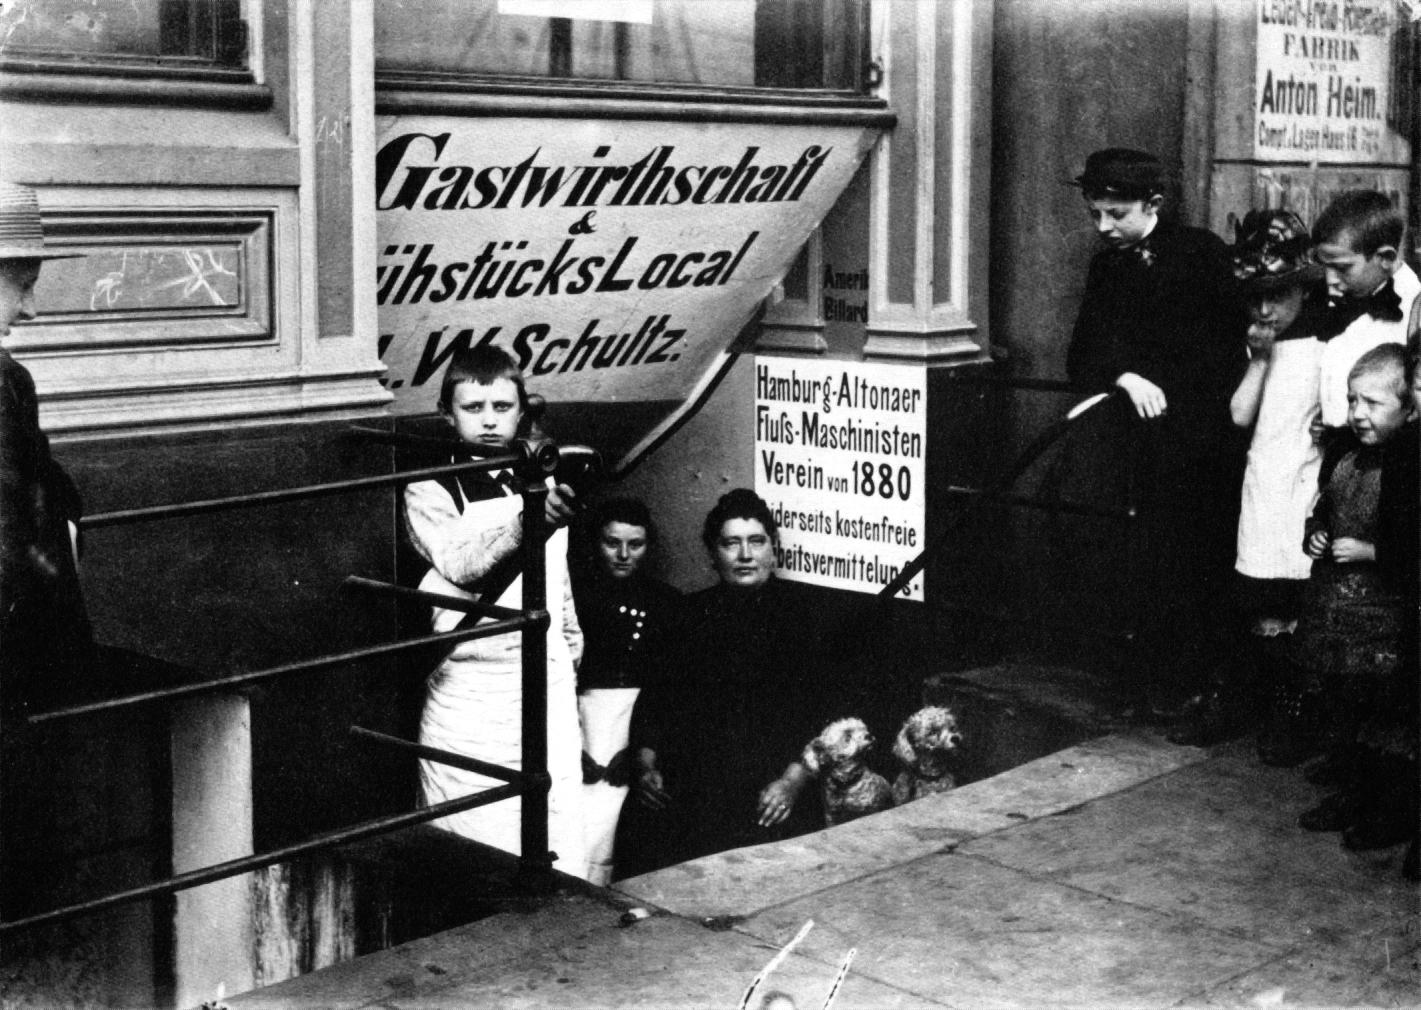 Auch hundert Jahre später in Hamburg: »Gastwirtschaft &amp; FrühstücksLocal L.W. Schultz« am Hafen, 1899. Diese Hafenkneipe diente wie viele andere als Arbeitsvermittlungsstelle.